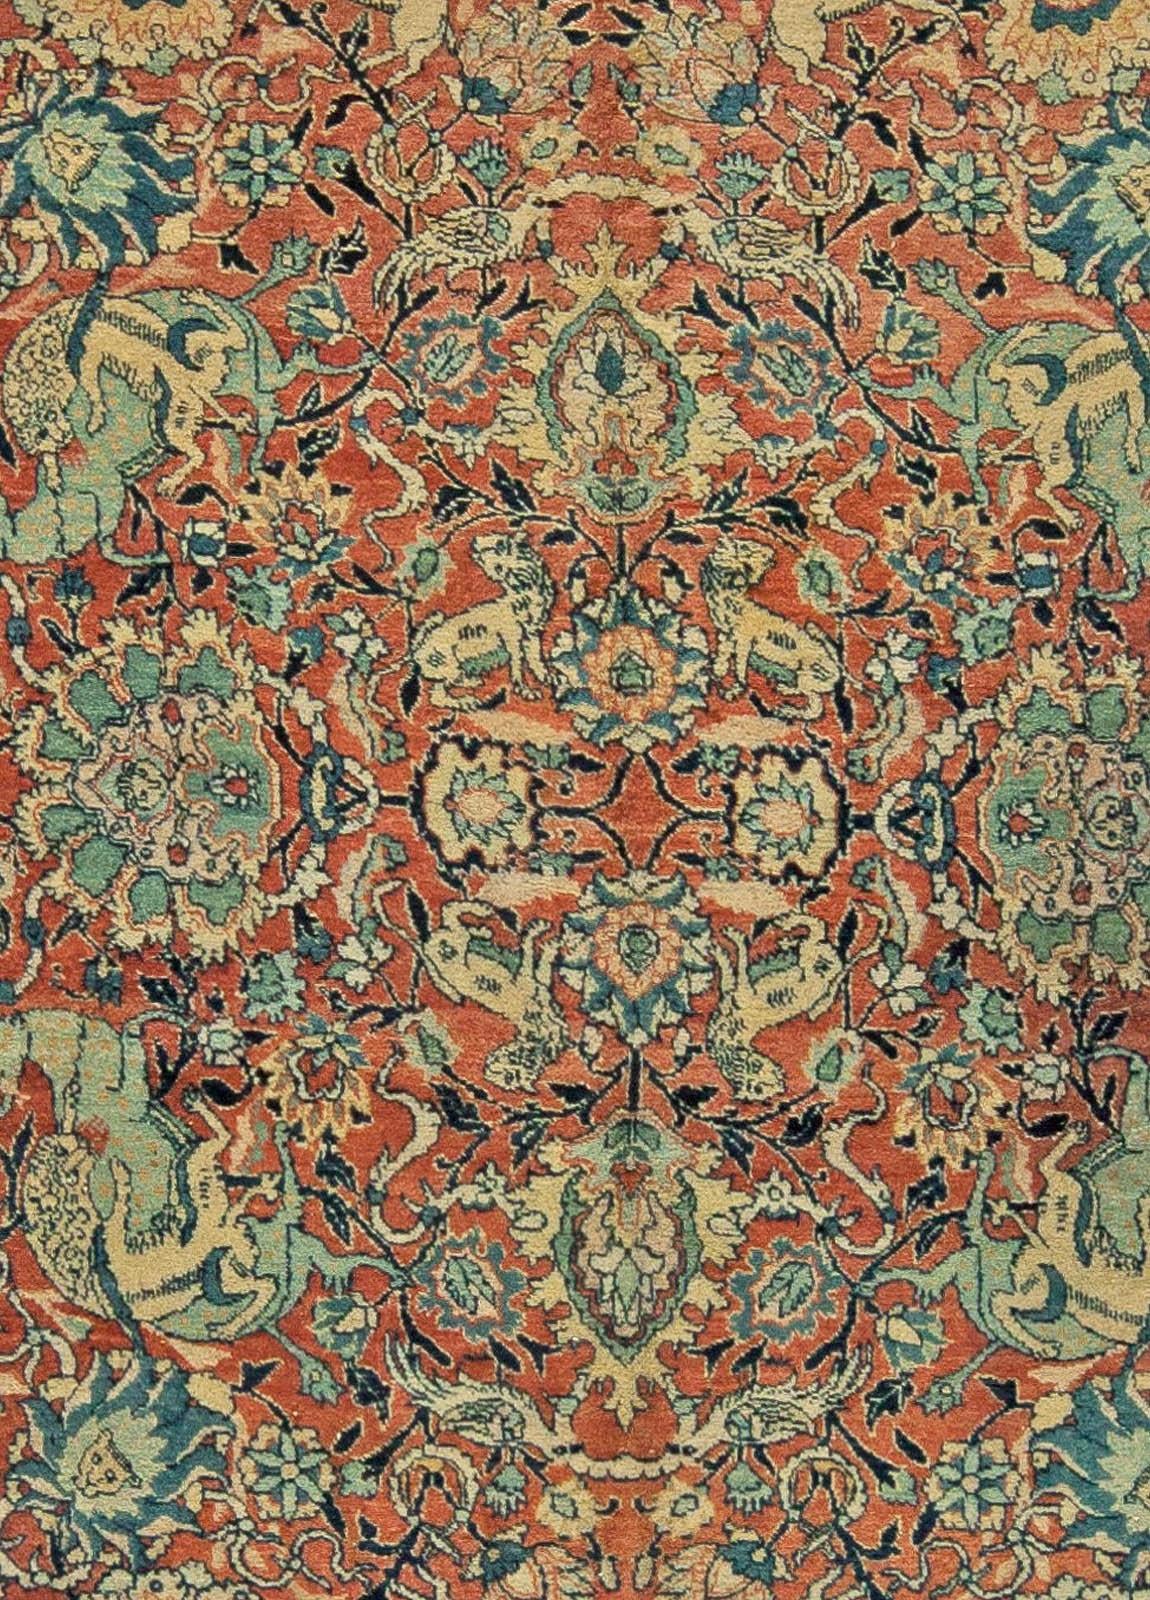 Antique Persian Tabriz Animal, botanic handwoven wool carpet
Size: 8'5